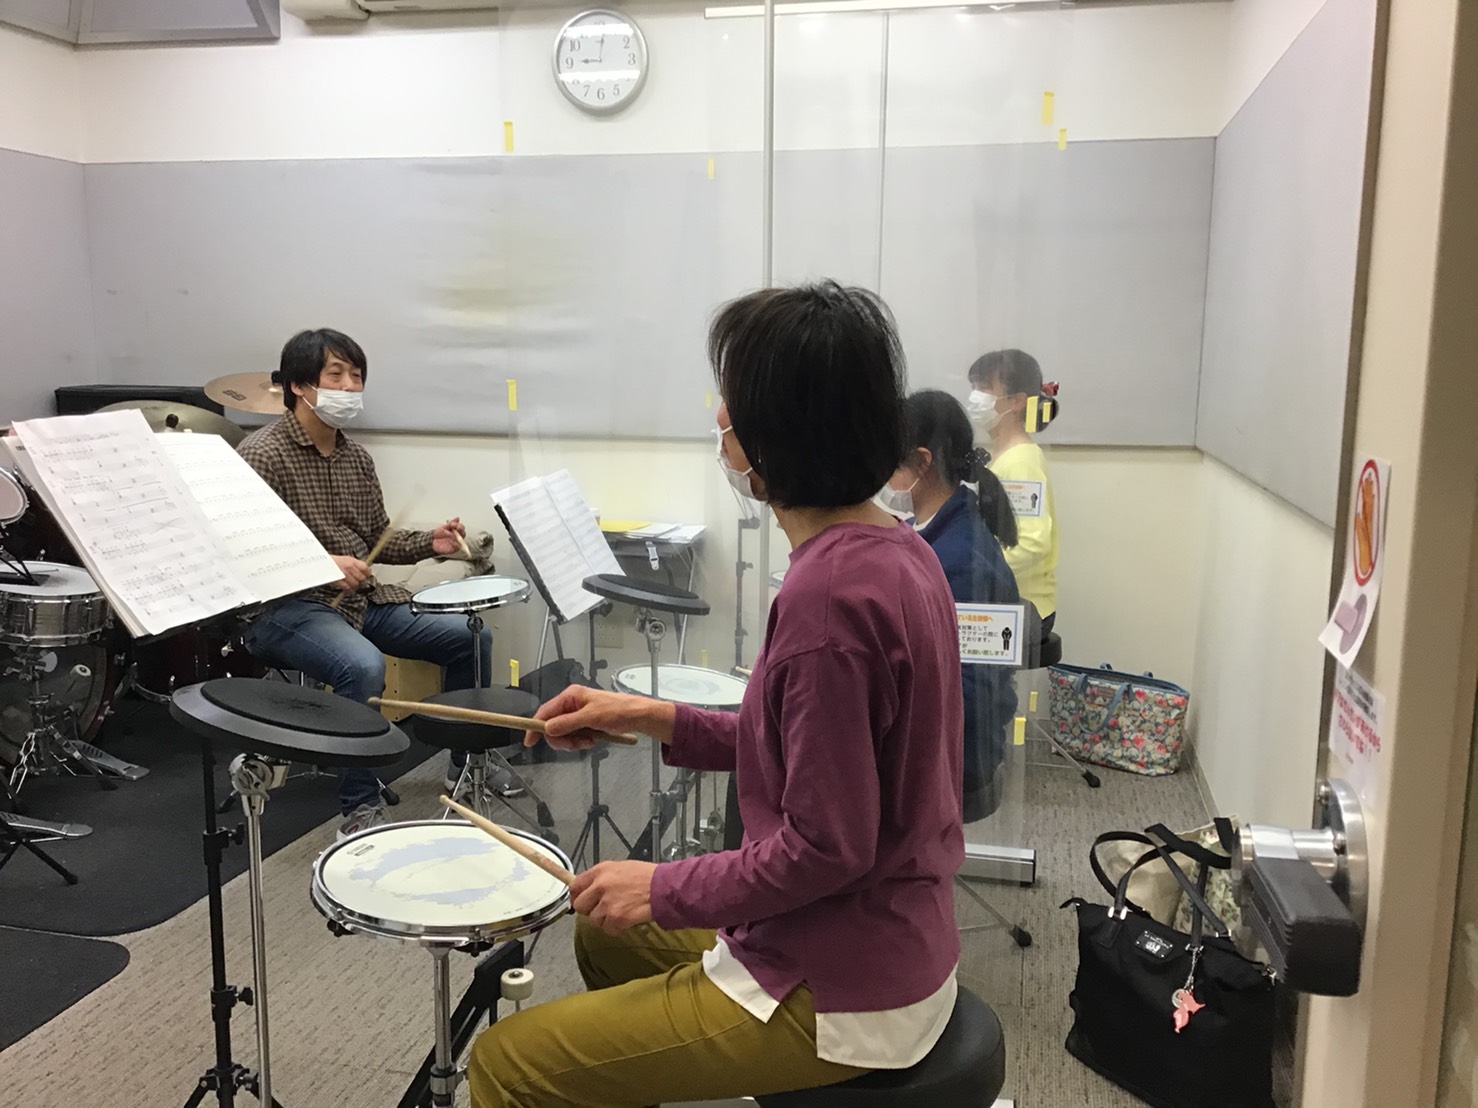 [https://www.shimamura.co.jp/shop/yukari/lesson-info/20200910/5300:title=] 皆さんこんにちは♪ユーカリが丘店スタッフの塩田です。 今回は当店のドラム教室についてご紹介します。]]バンドでカッコよく激しく！そんなイメージを持たれ […]